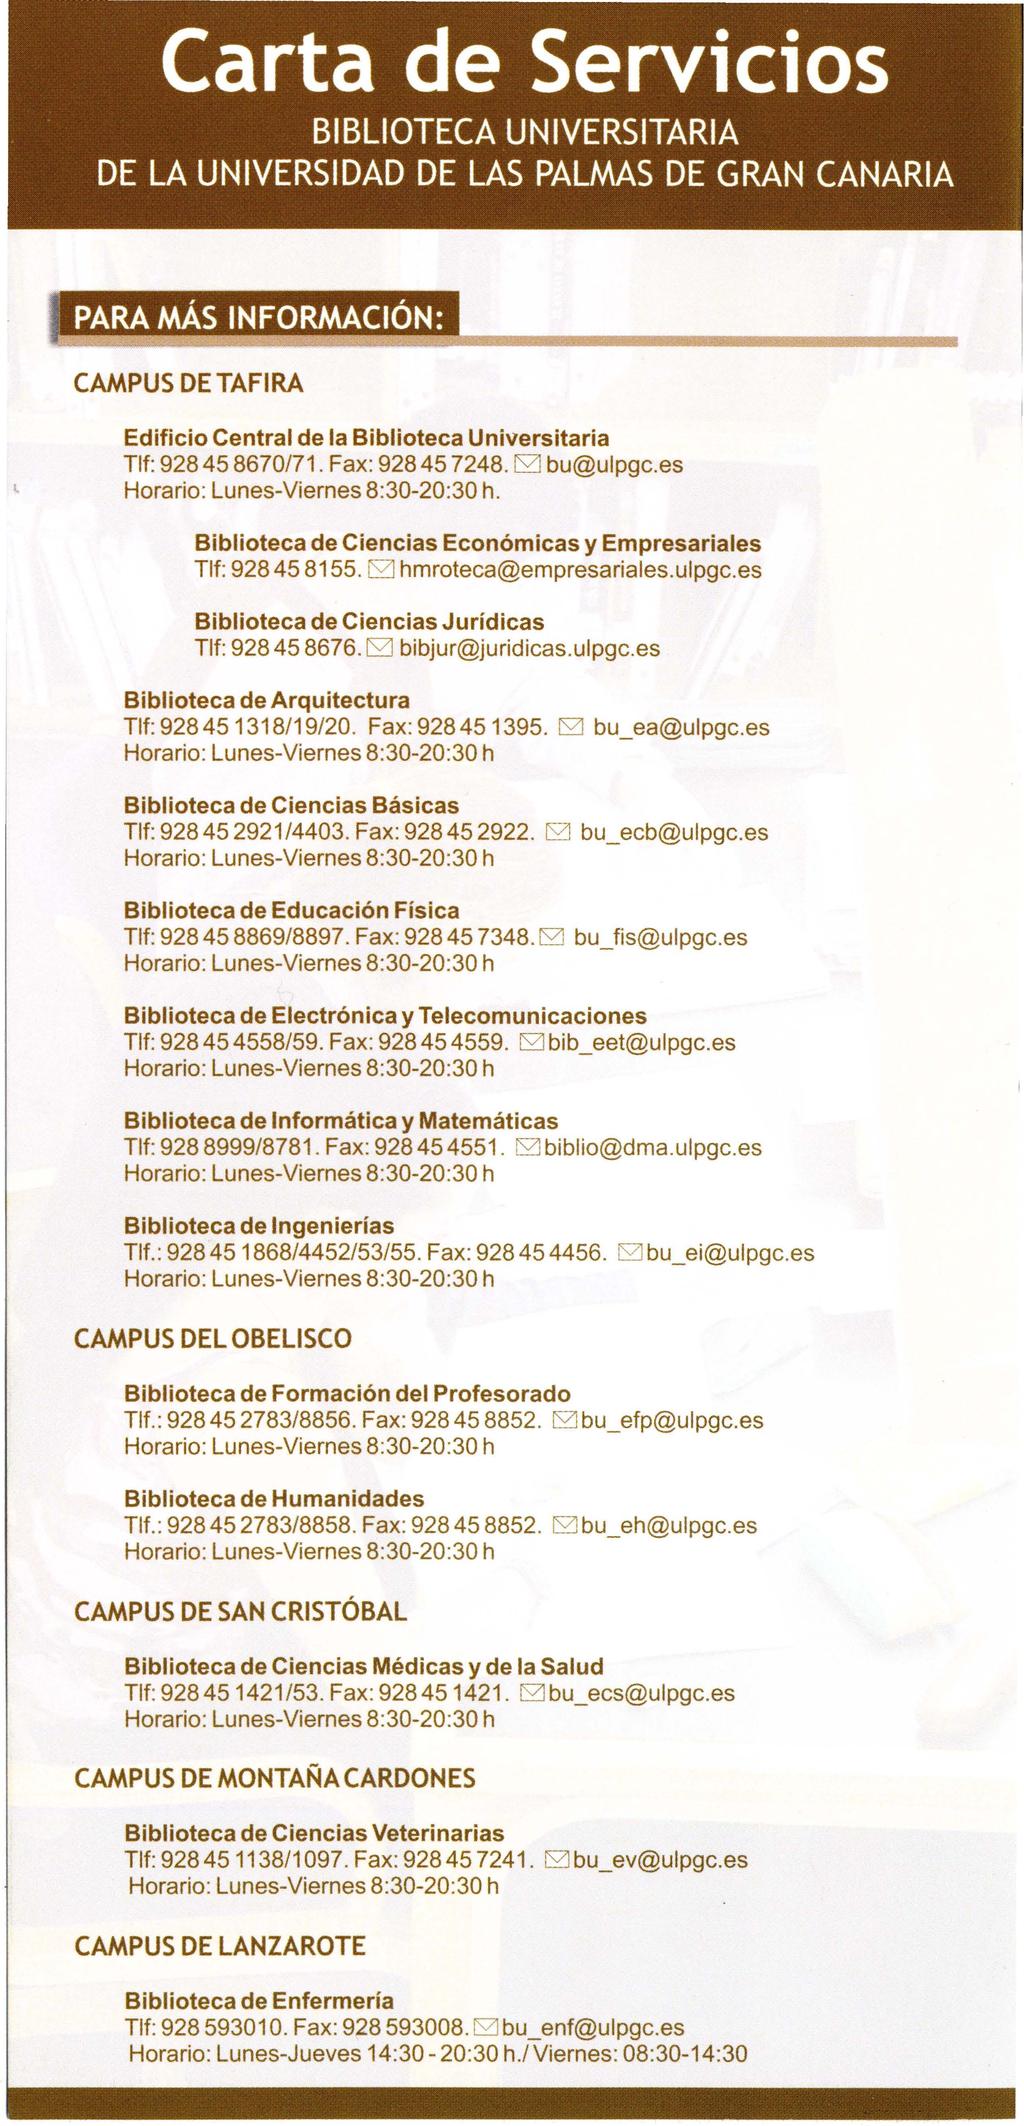 Carta de Servicios BIBLIOTECA UNIVERSITARIA DE LA UNIVERSIDAD DE LAS PALMAS DE GRAN CANARIA :; PARA MÁs INFORMACiÓN: CAMPUS DE TAFIRA Edificio Central de la Biblioteca Universitaria Tlf: 928458670/71.